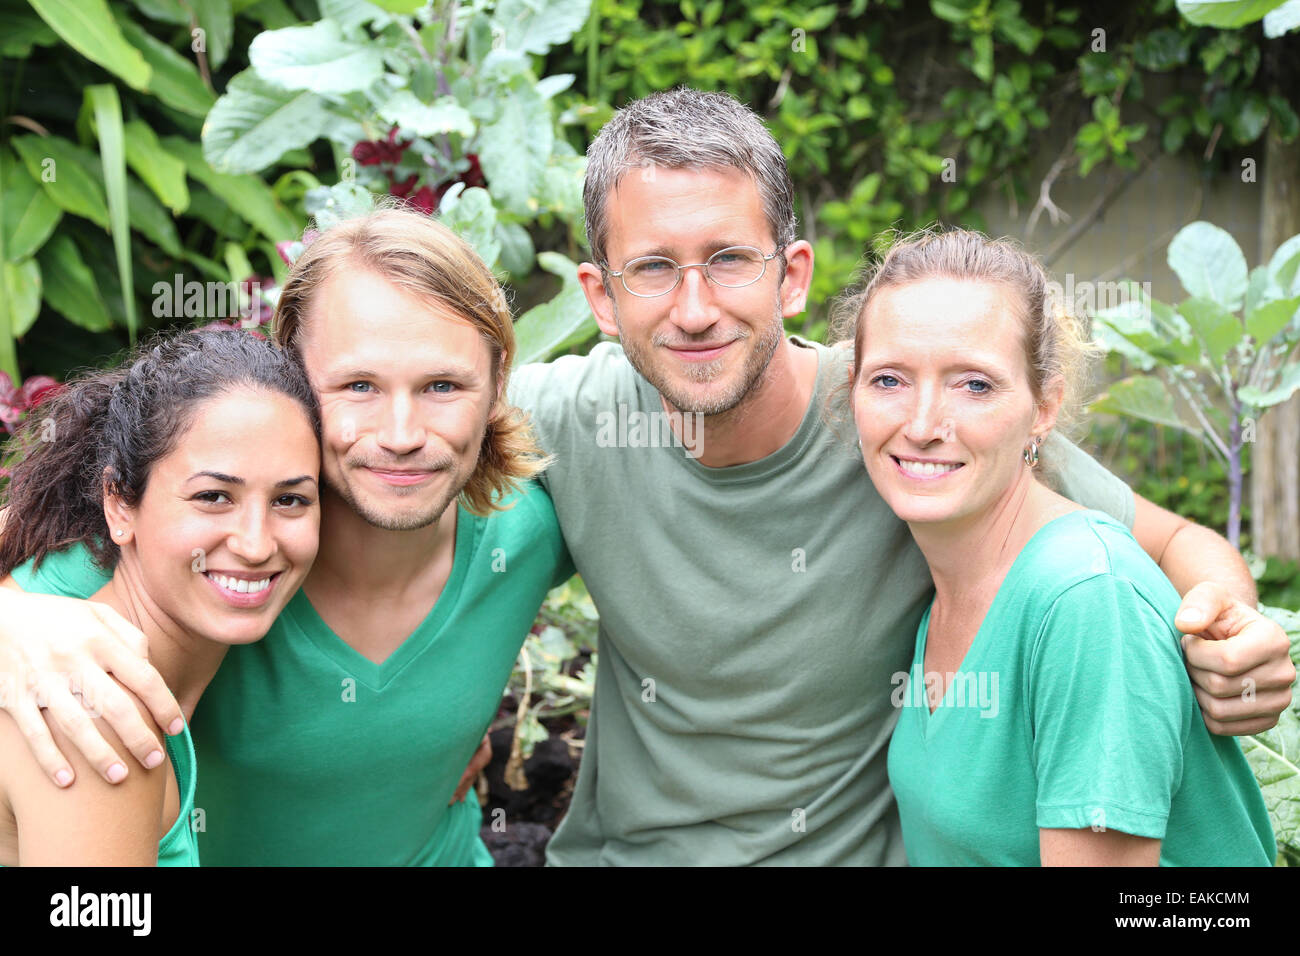 Porträt von vier Männern und Frauen tragen grüne T-shirts im Garten Stockfoto